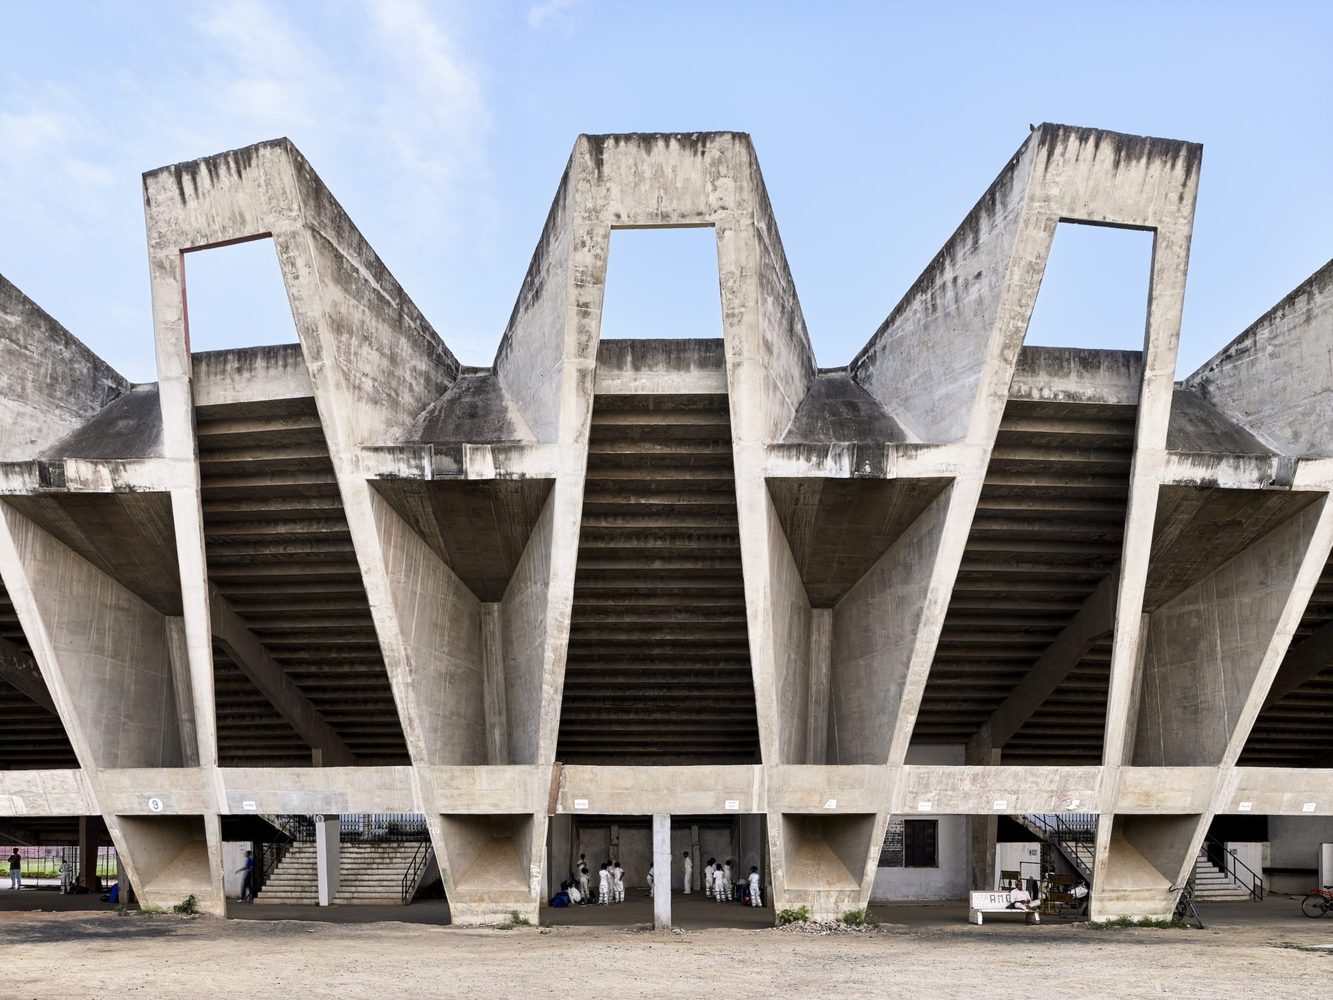 Знаменитый стадион имени Сардара Валлабхбая Пателя в Ахмадабаде, спроектированный Чарльзом Корреа, собираются снести